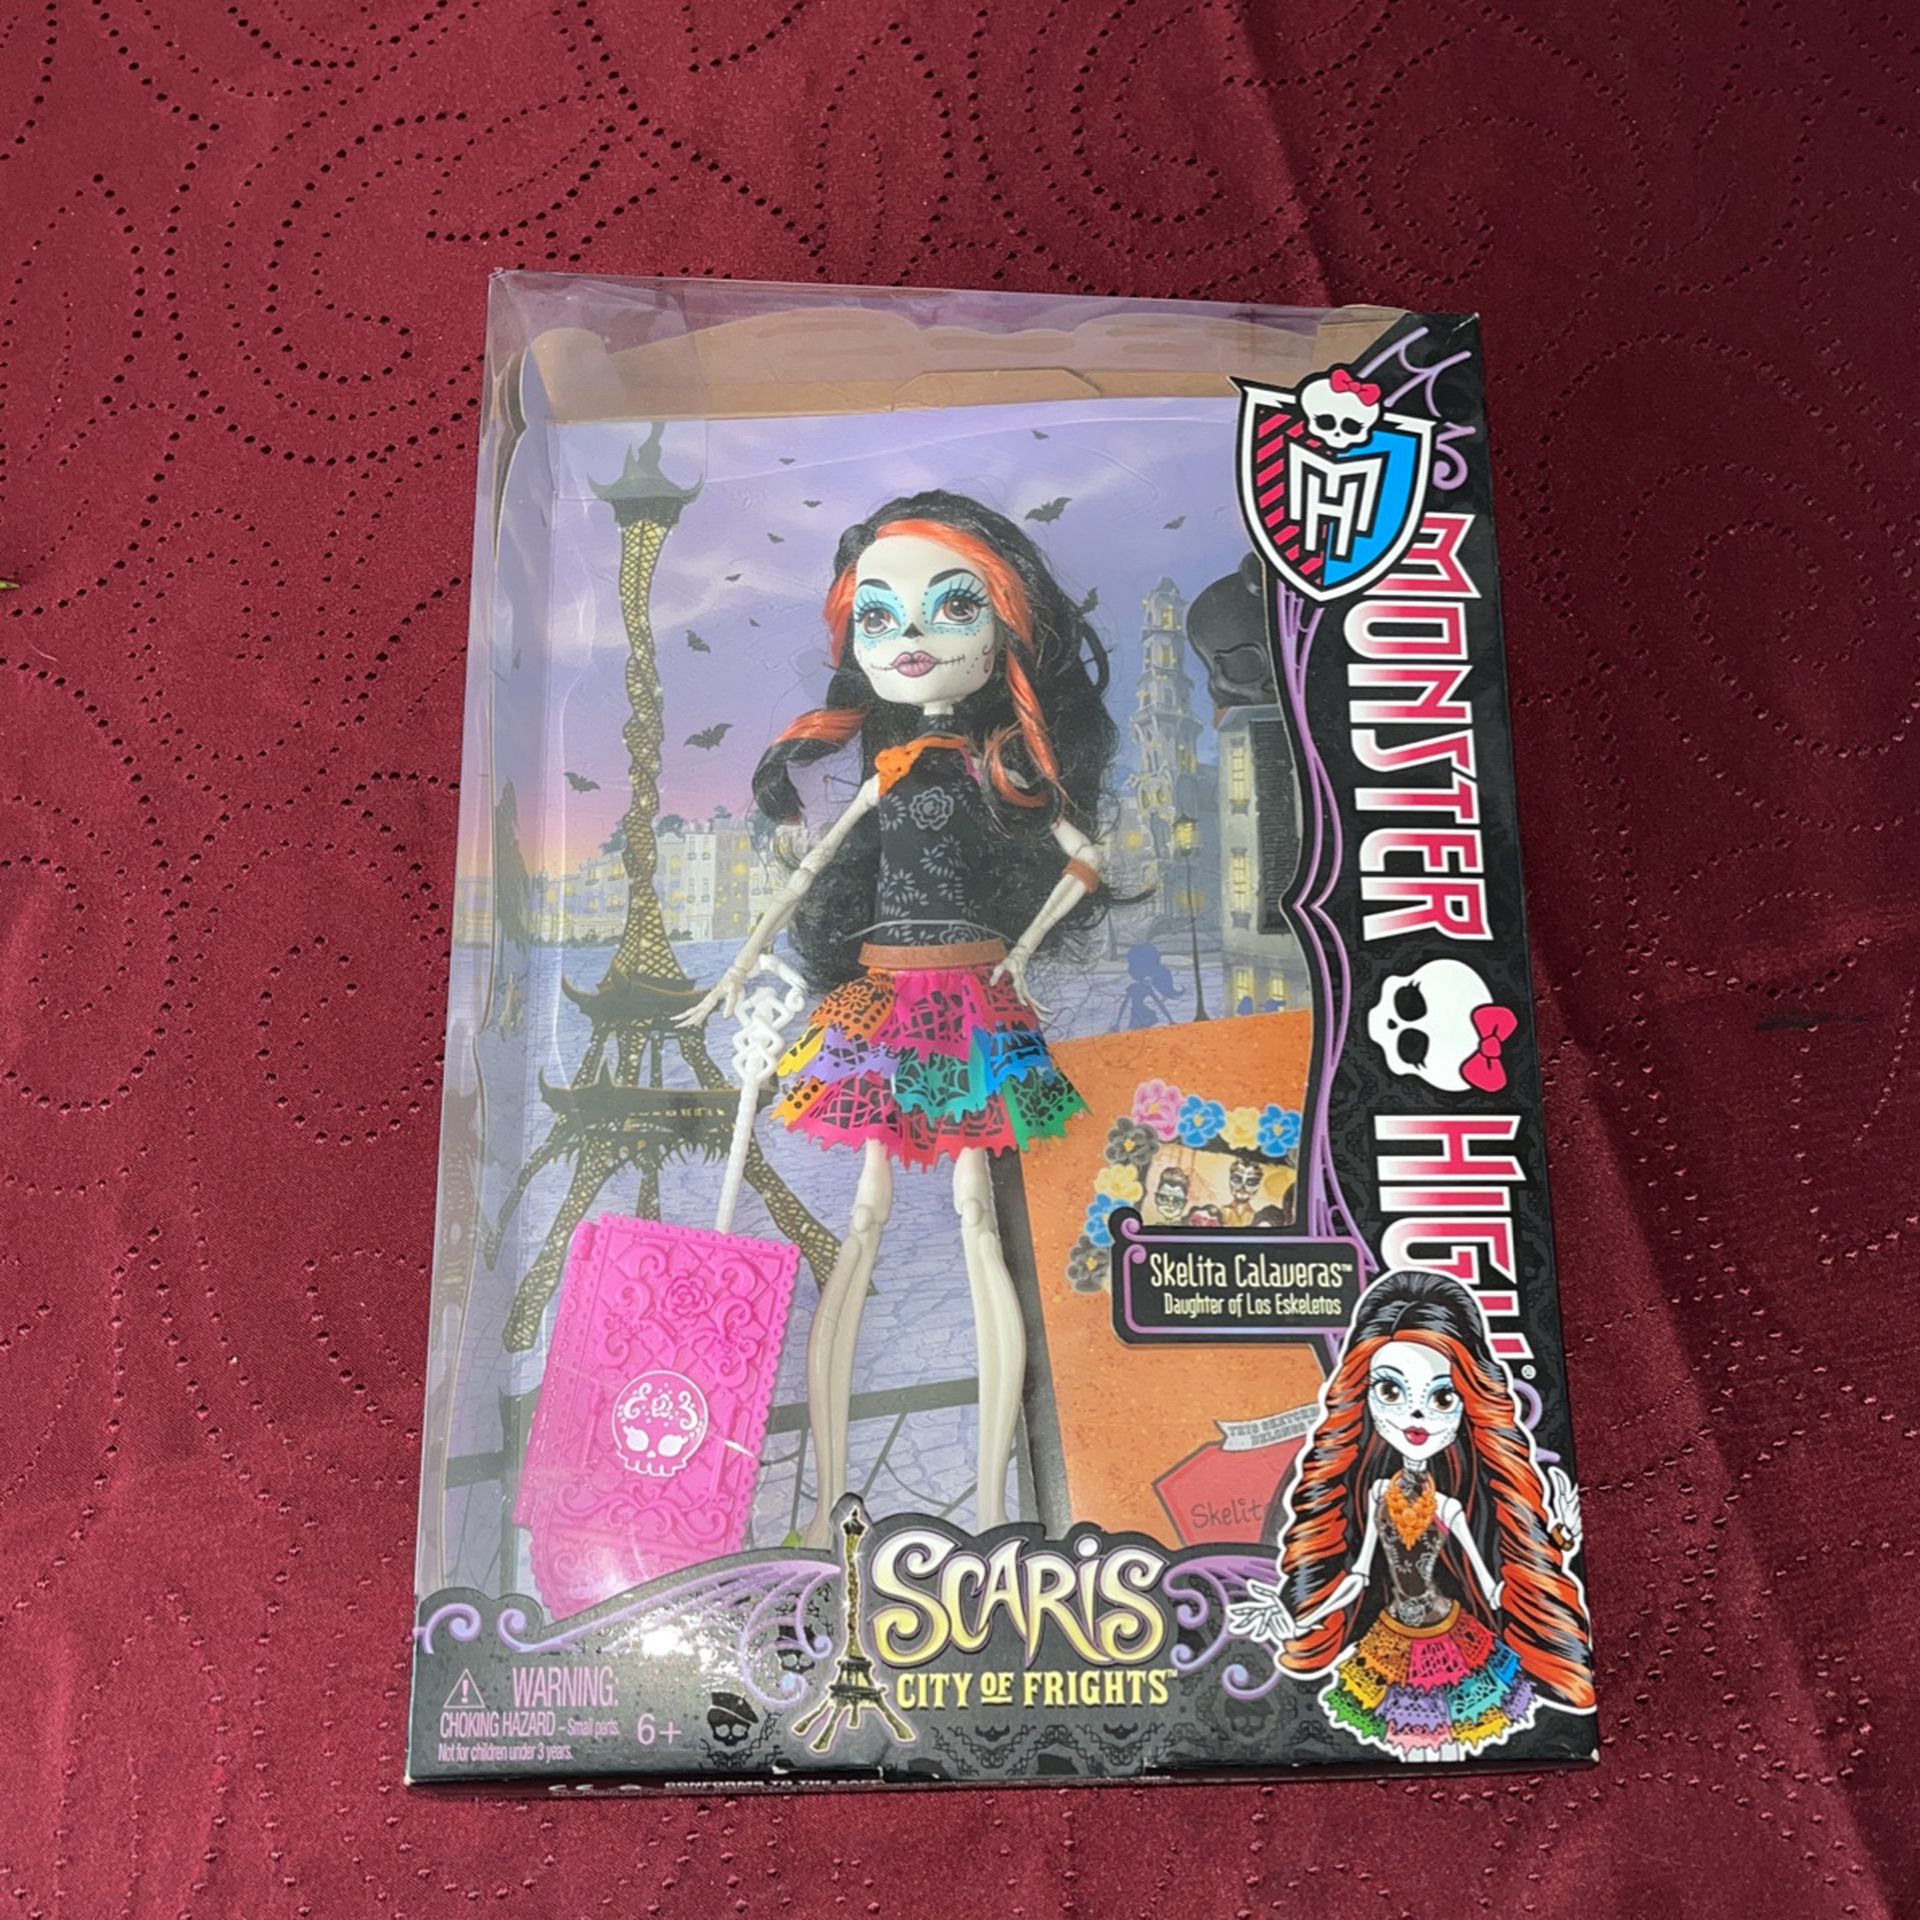 2012 Monster High Skelita Calaveras Doll NIB